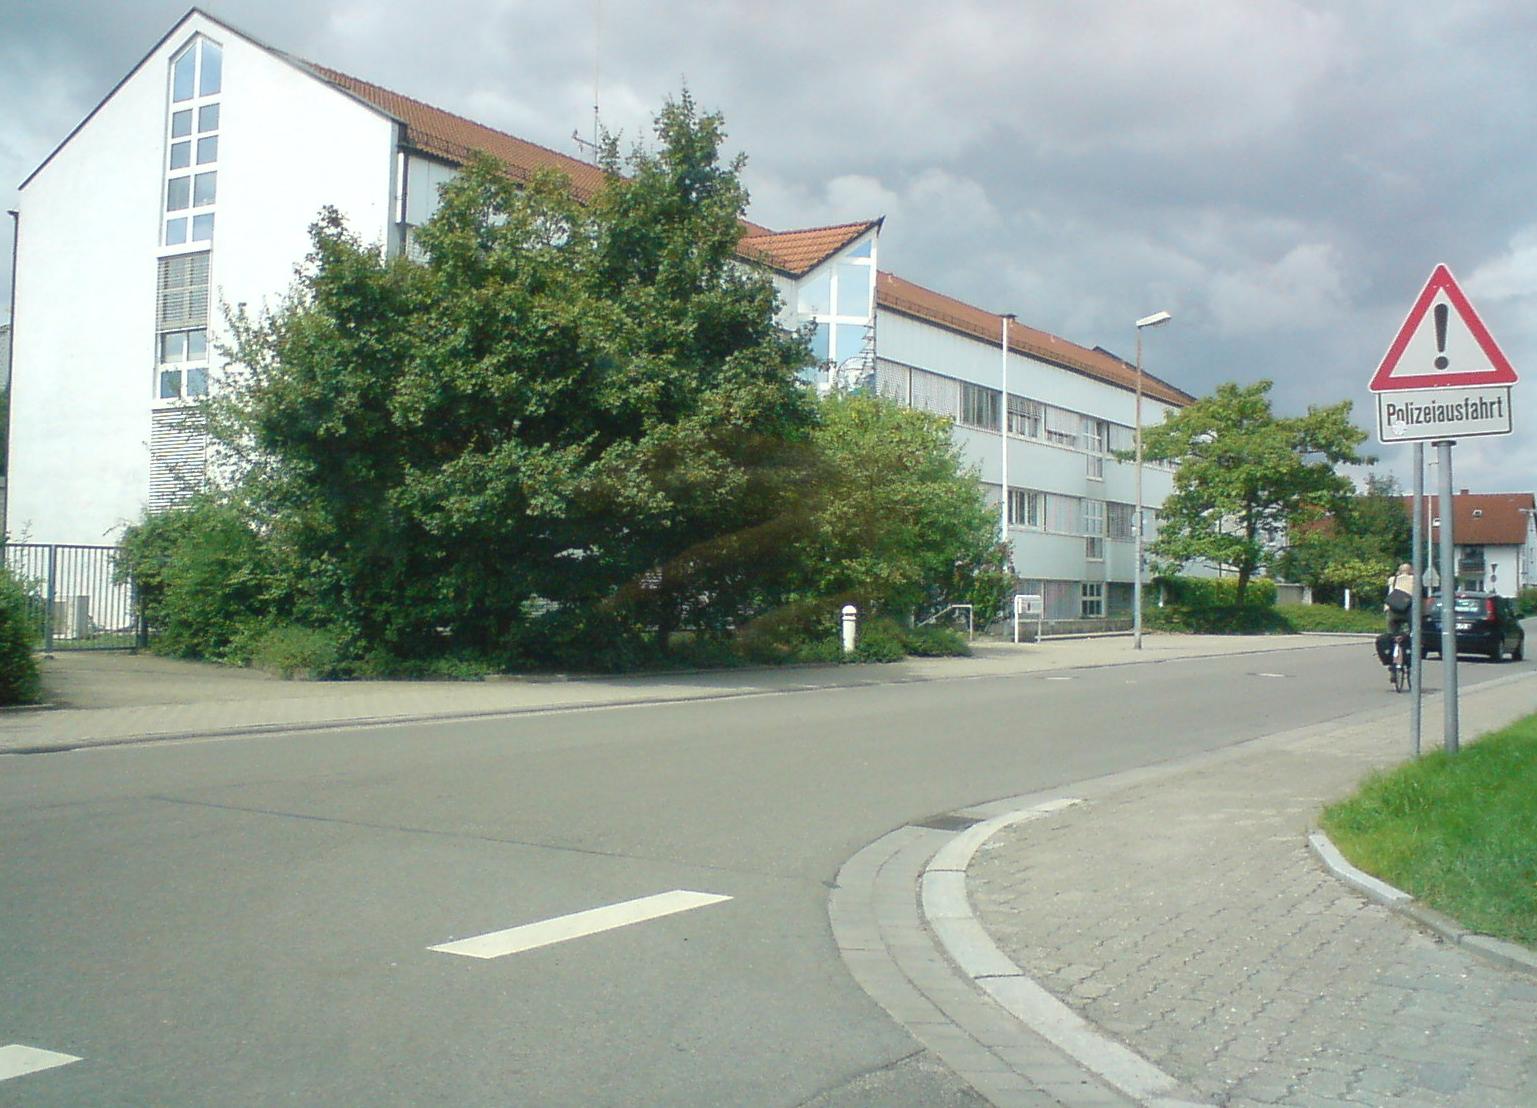 Datei:Polizeiwache Schifferstadt.jpg